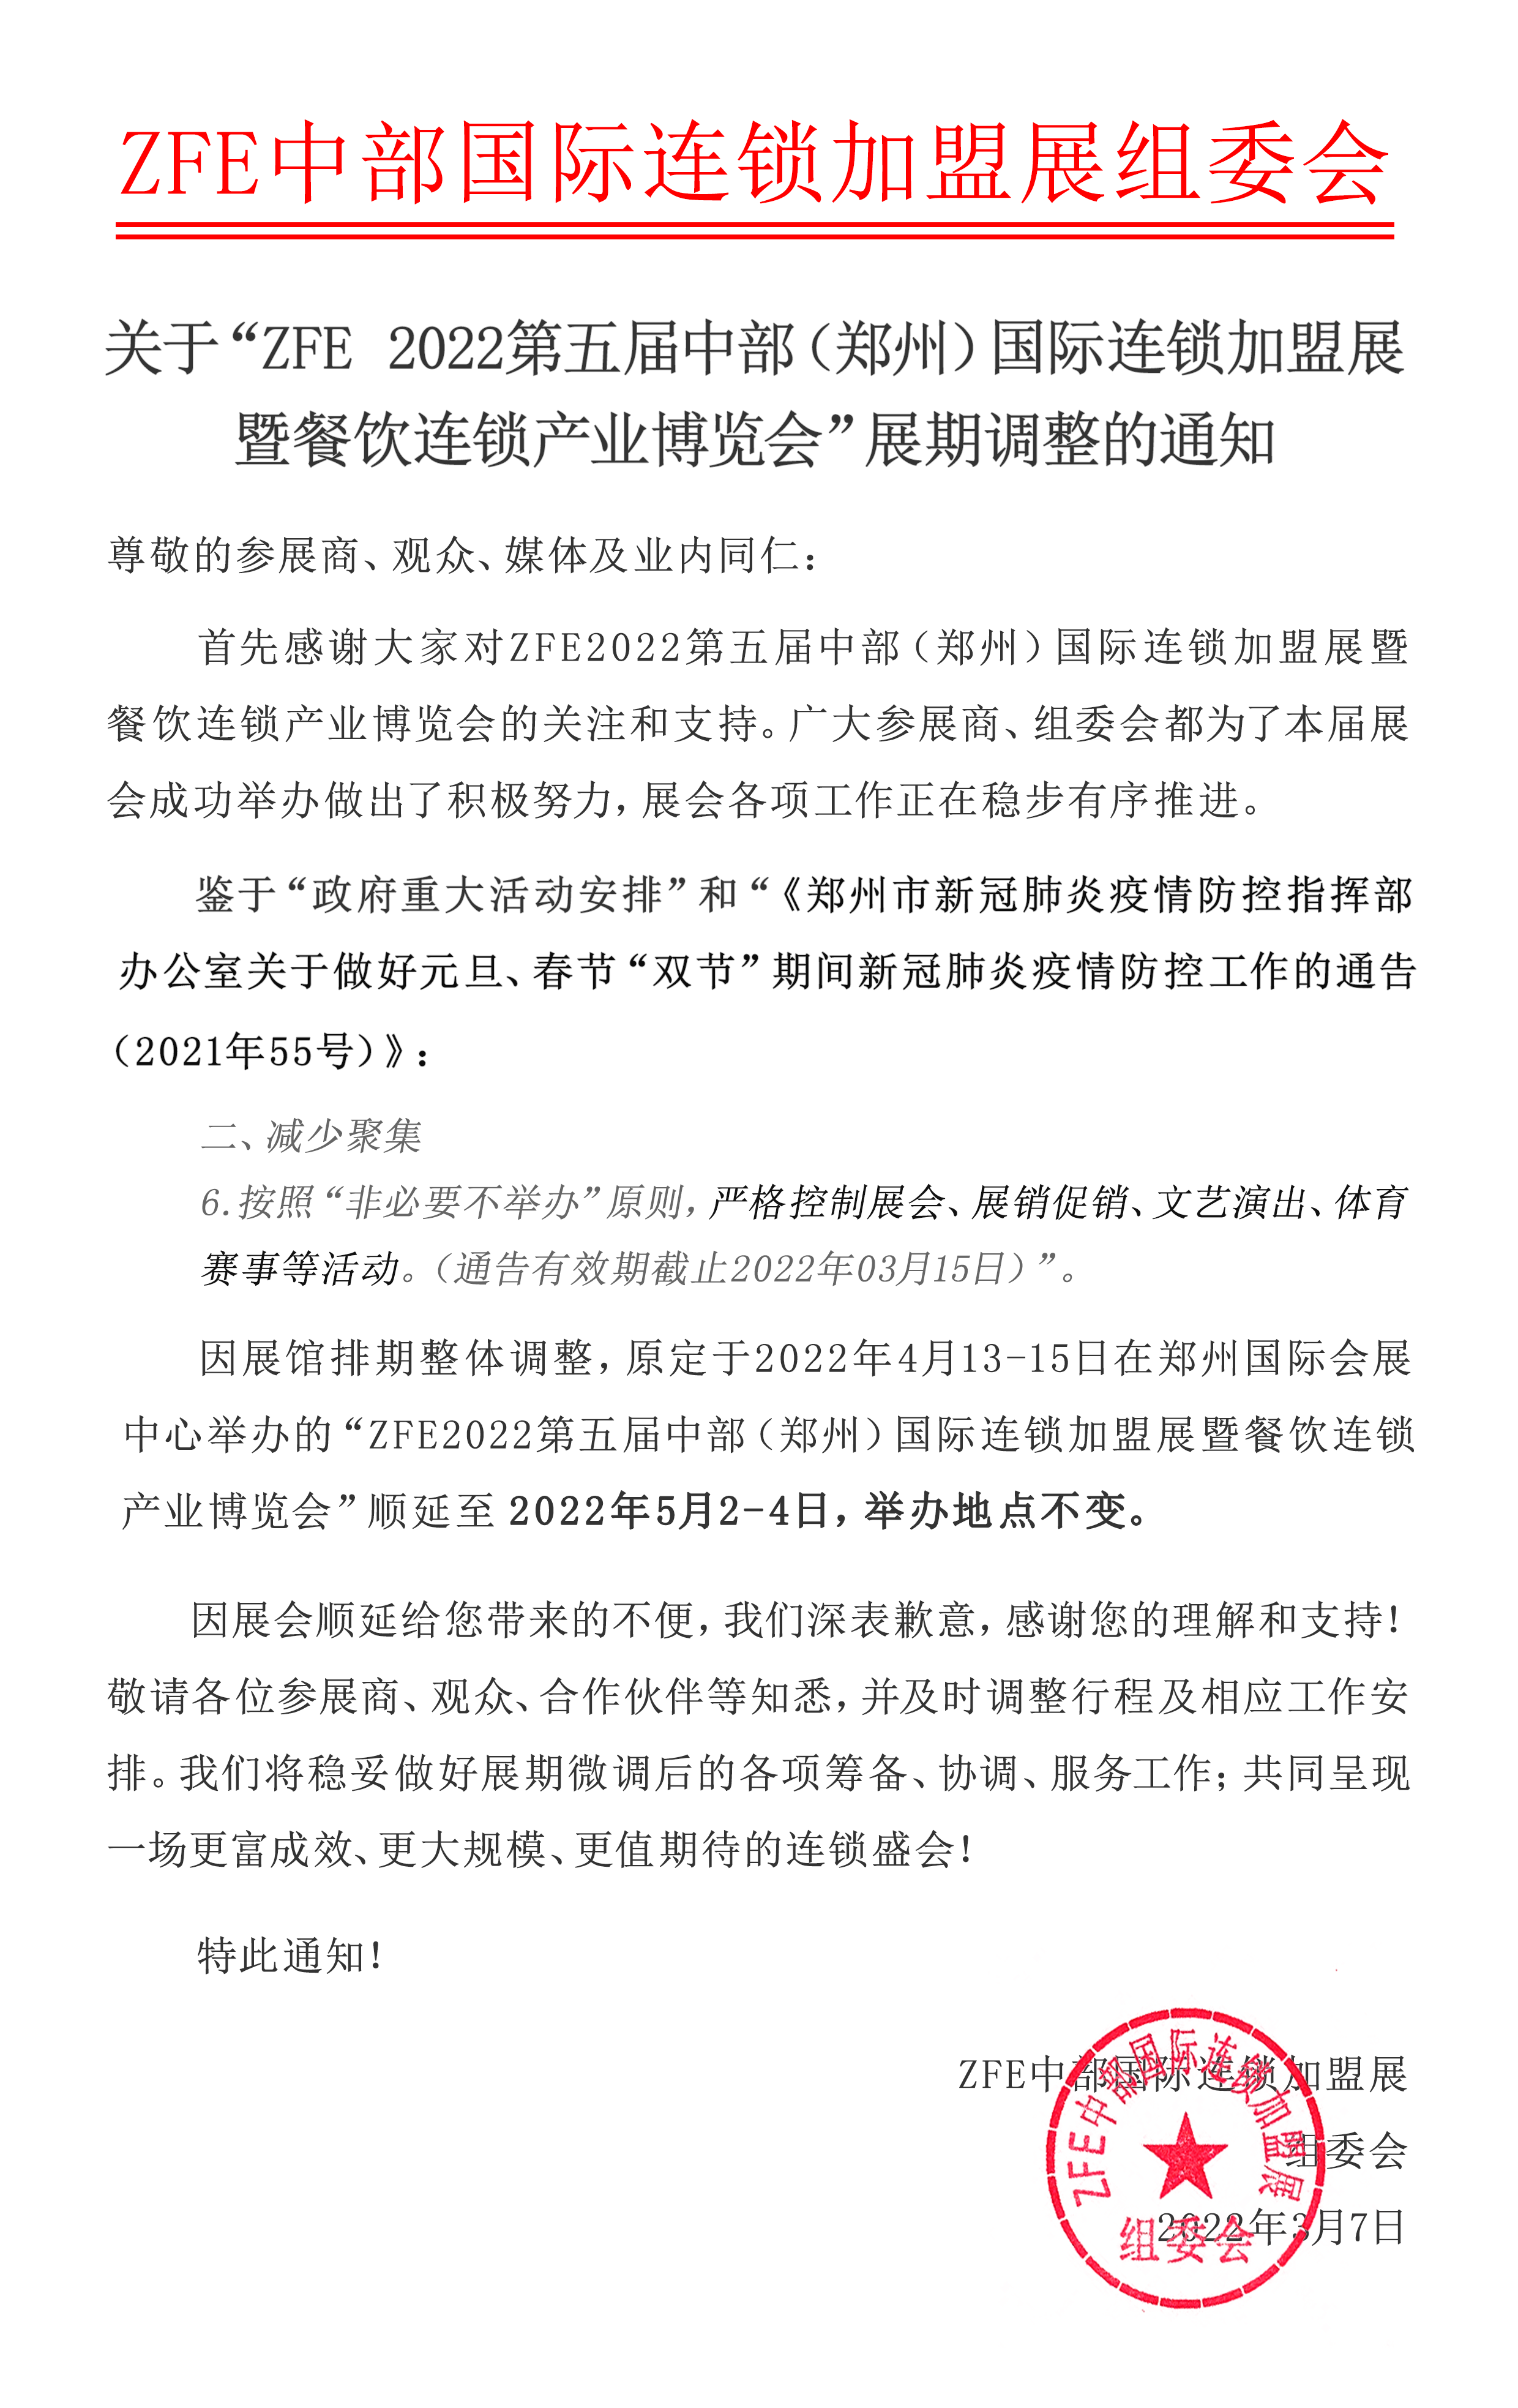 关于ZFE2022第五届中部（郑州）国际连锁加盟展顺延的通知(图1)